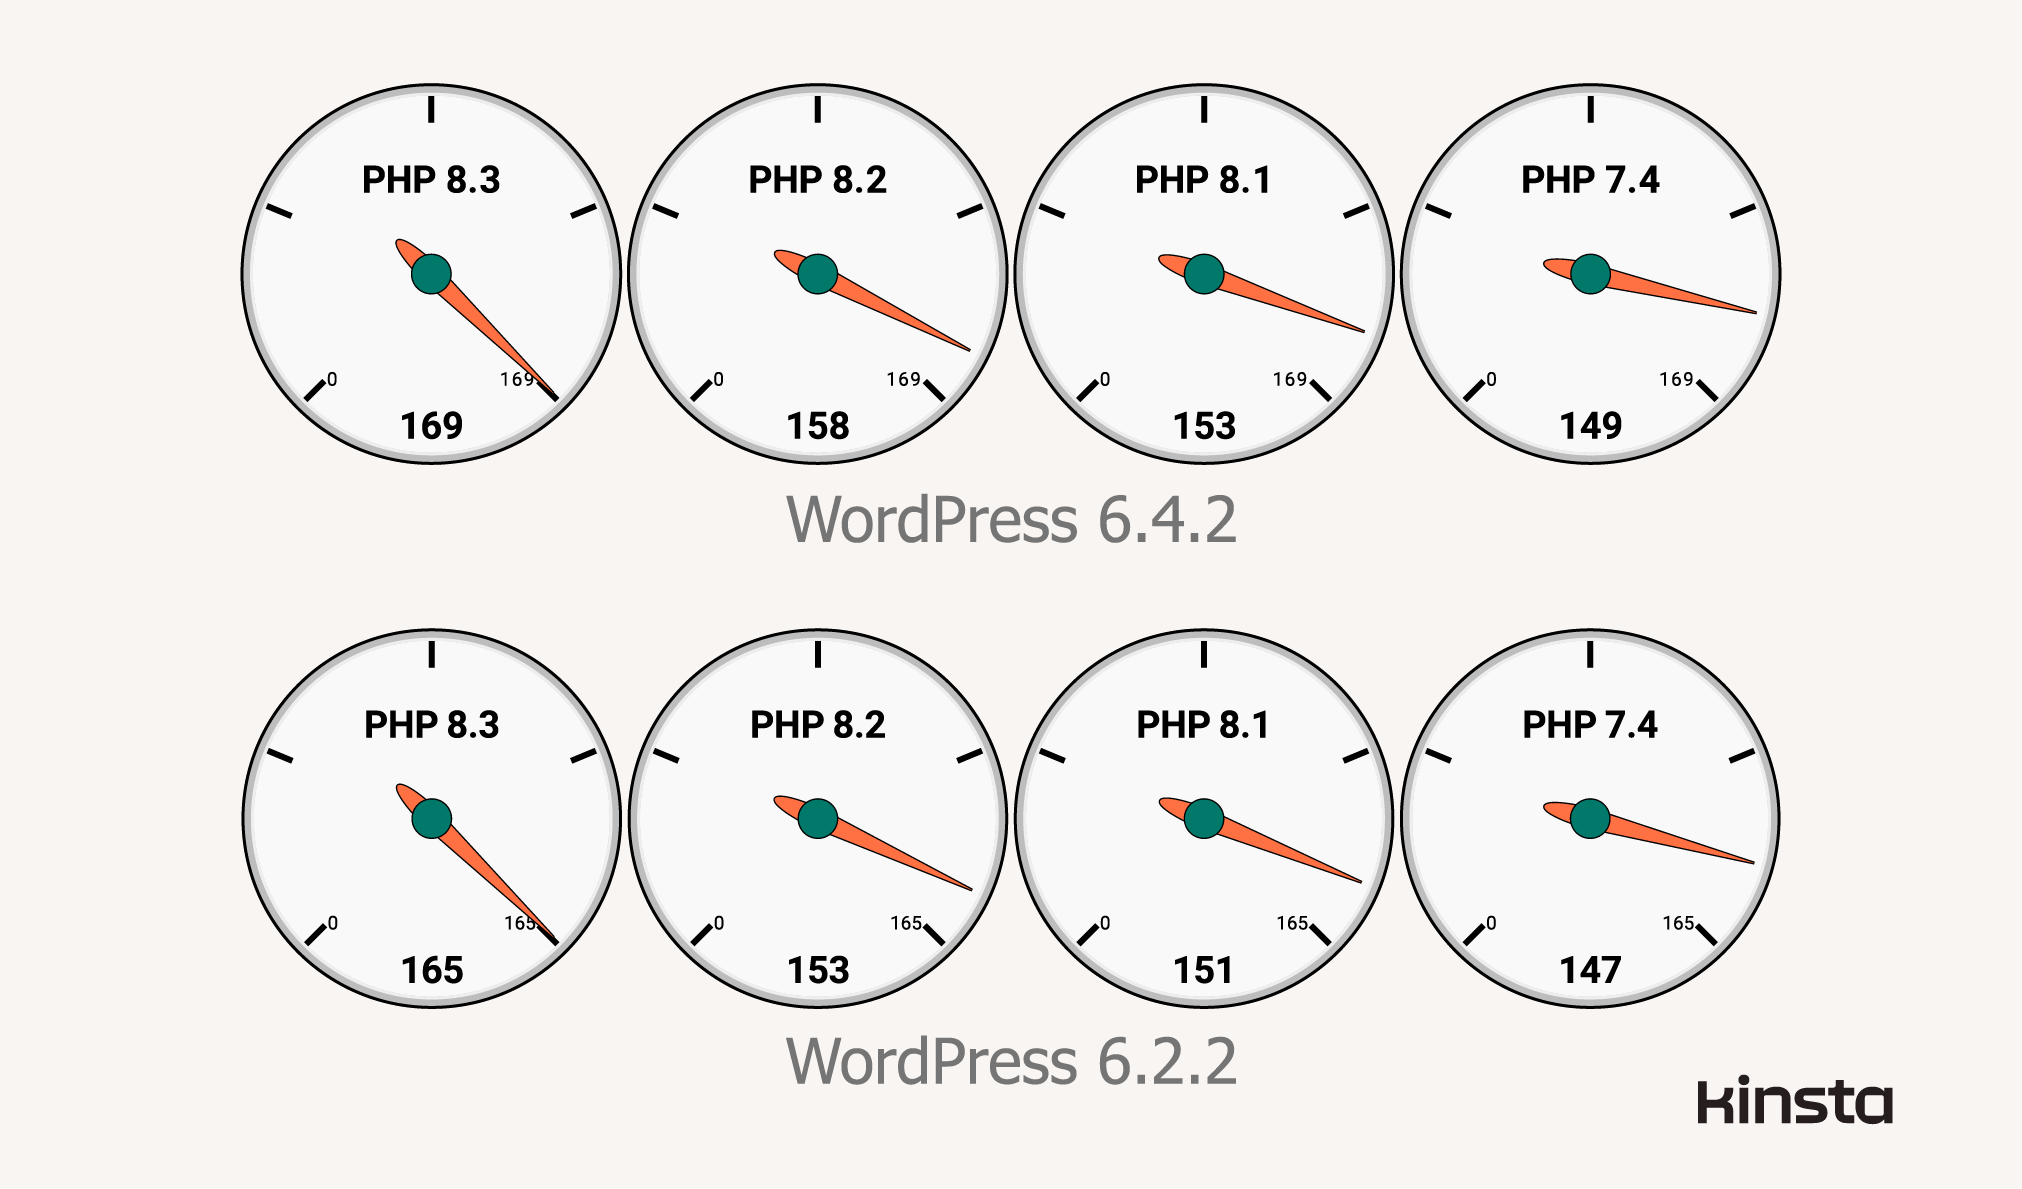 Leistung von WordPress 6.4.2 und 6.2.2 auf PHP 7.4, 8.1, 8.2 und 8.3 (in Anfragen/Sekunde).